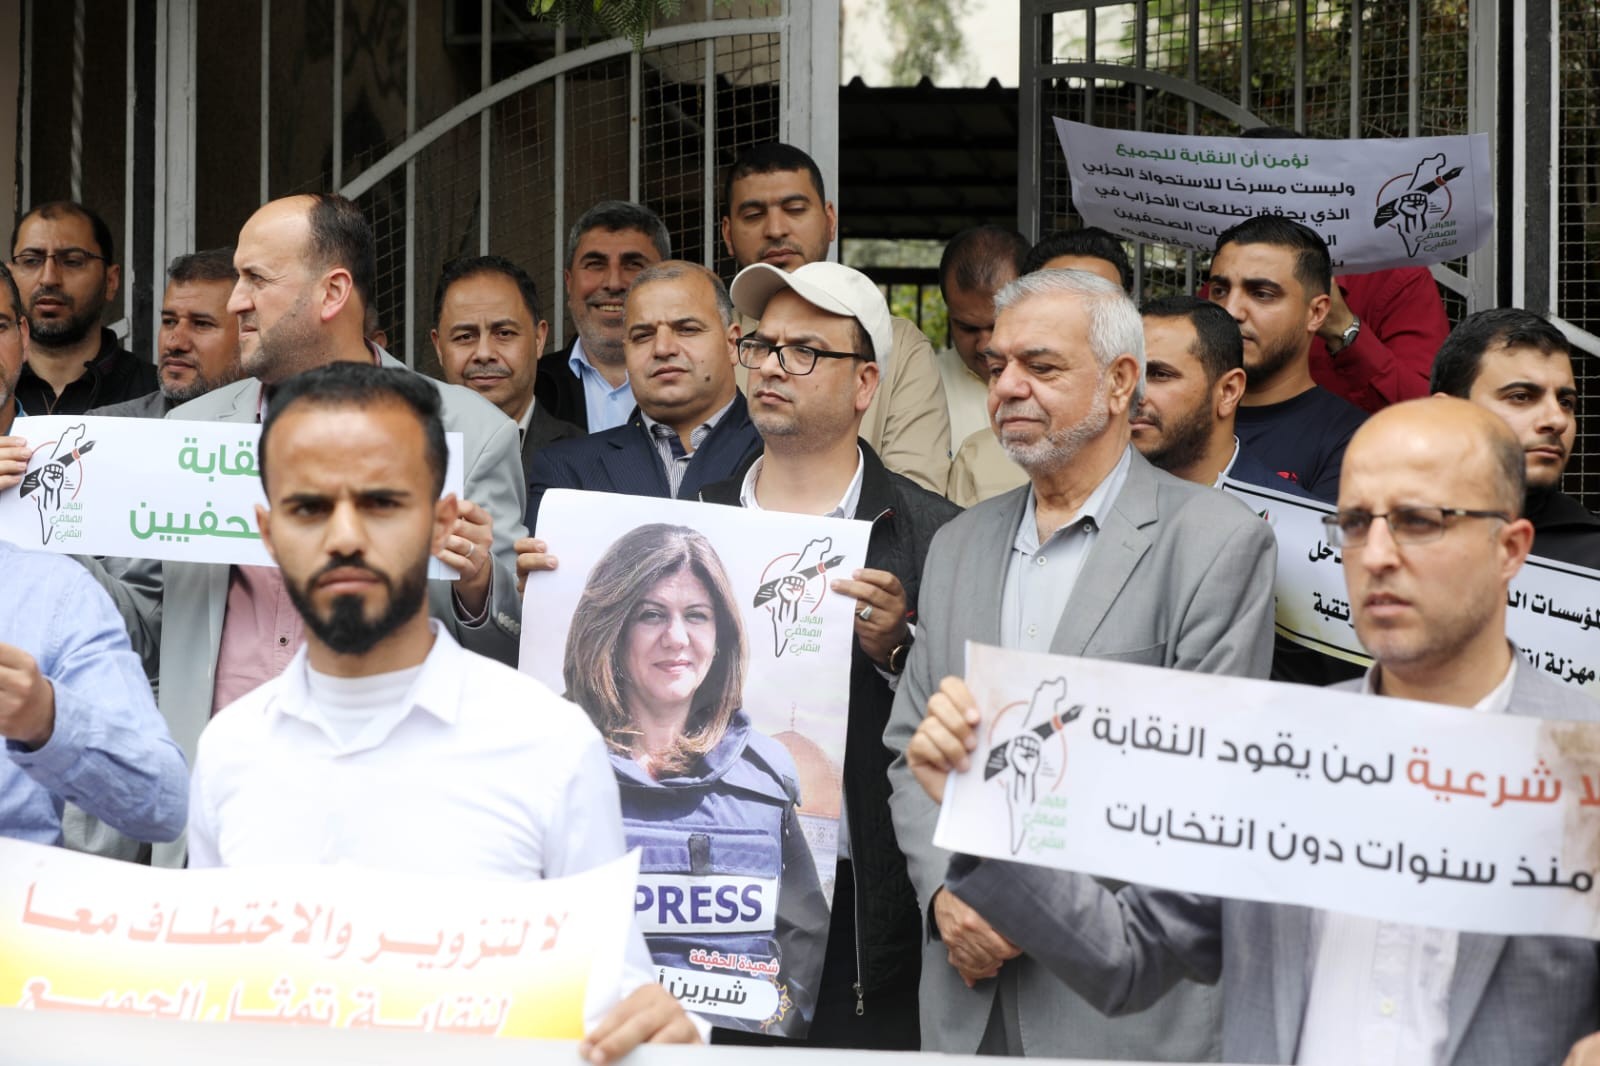 صور من الاعتصام الذي نظمه حراك الصحفيين ضد انتخابات نقابة الصحفيين (2).jpg